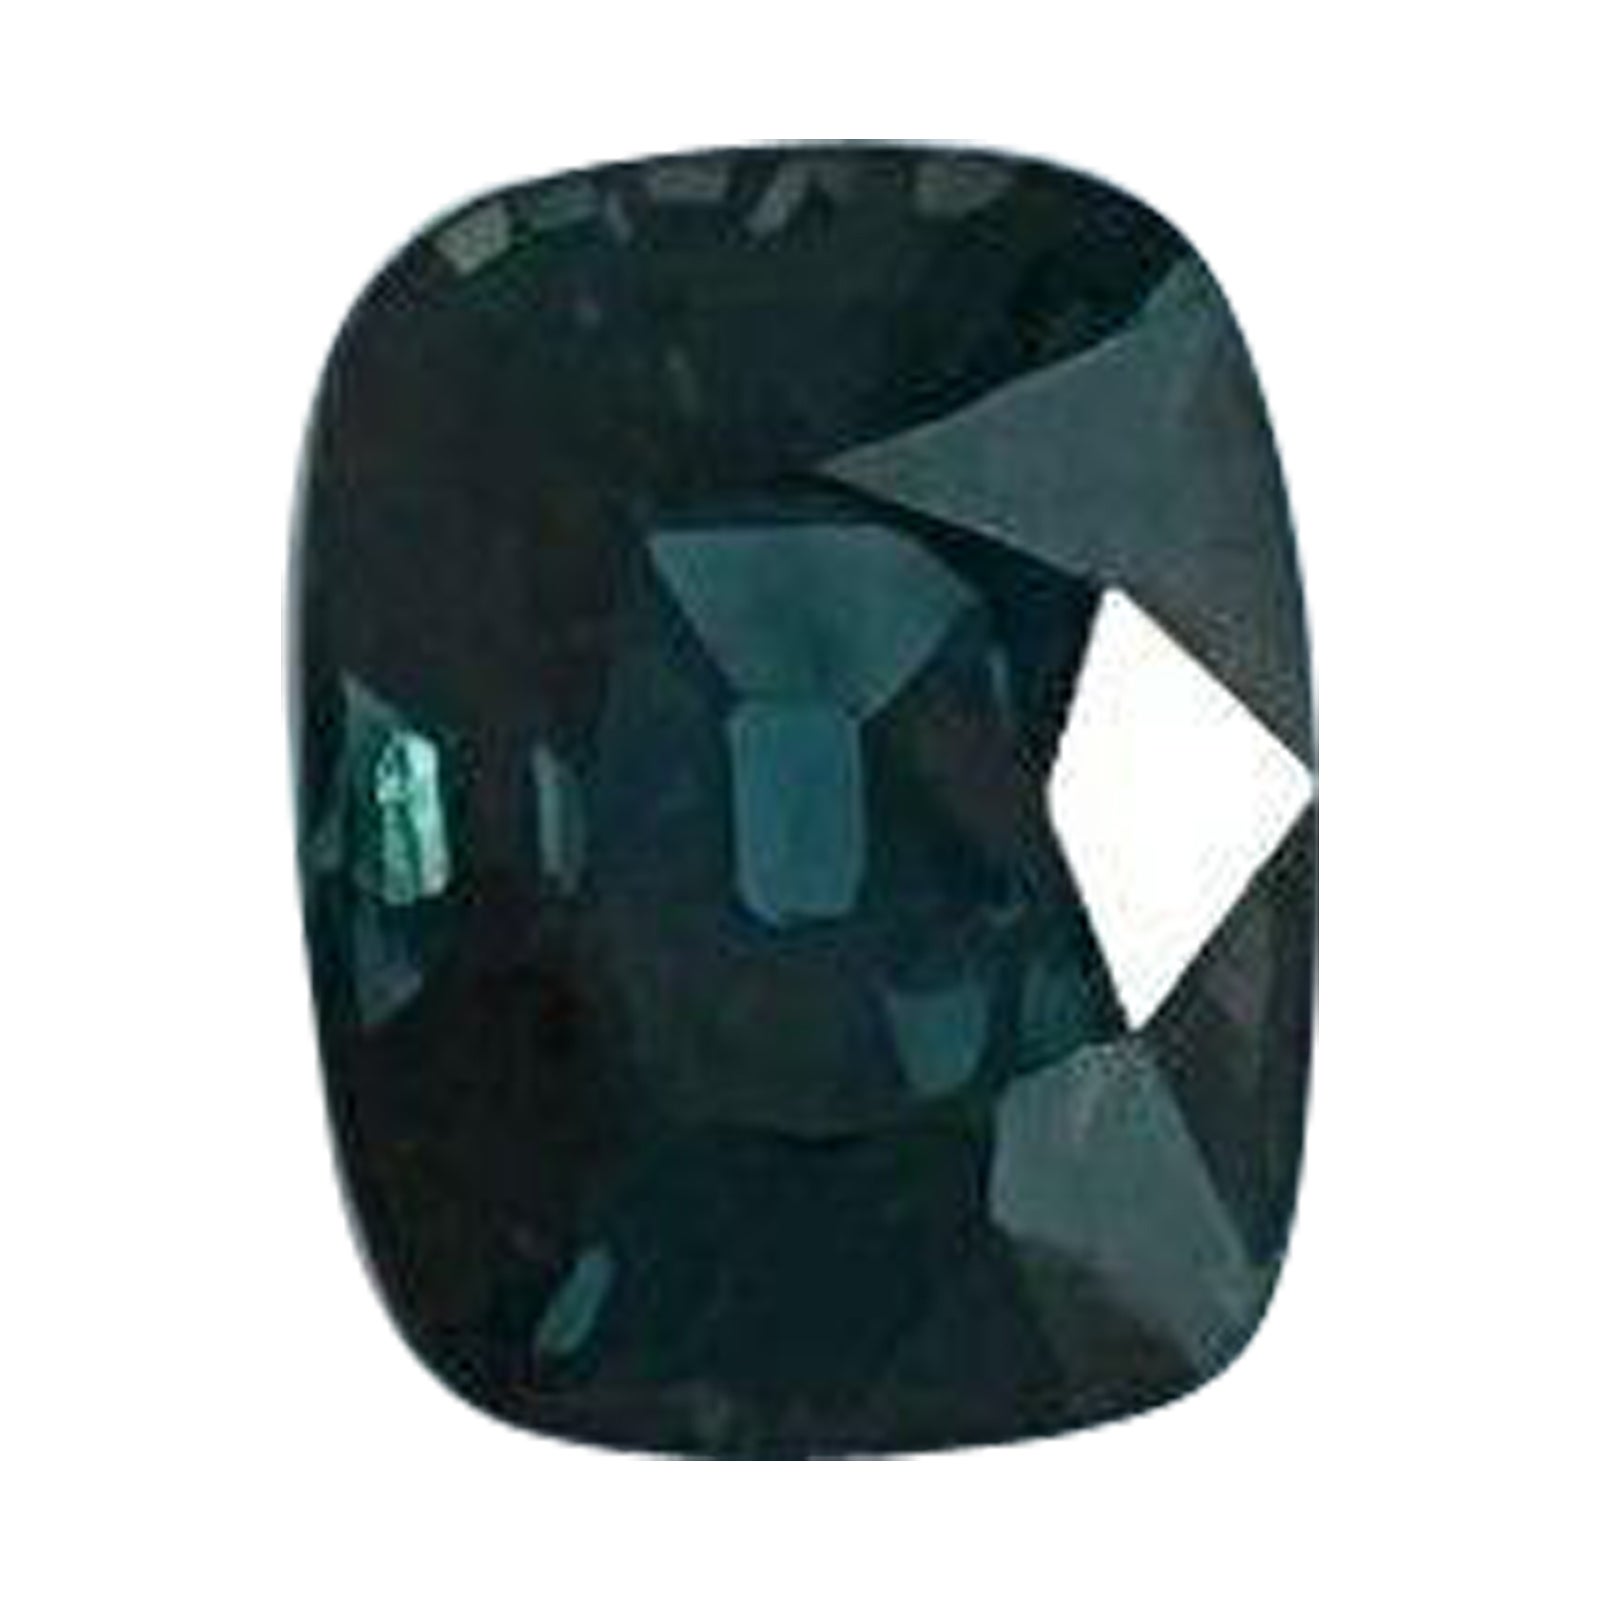 1.22ct Natural Deep Green Blue Teal Sapphire Unheated Cushion Cut IGI Certified (Saphir non chauffé, taille en coussin)